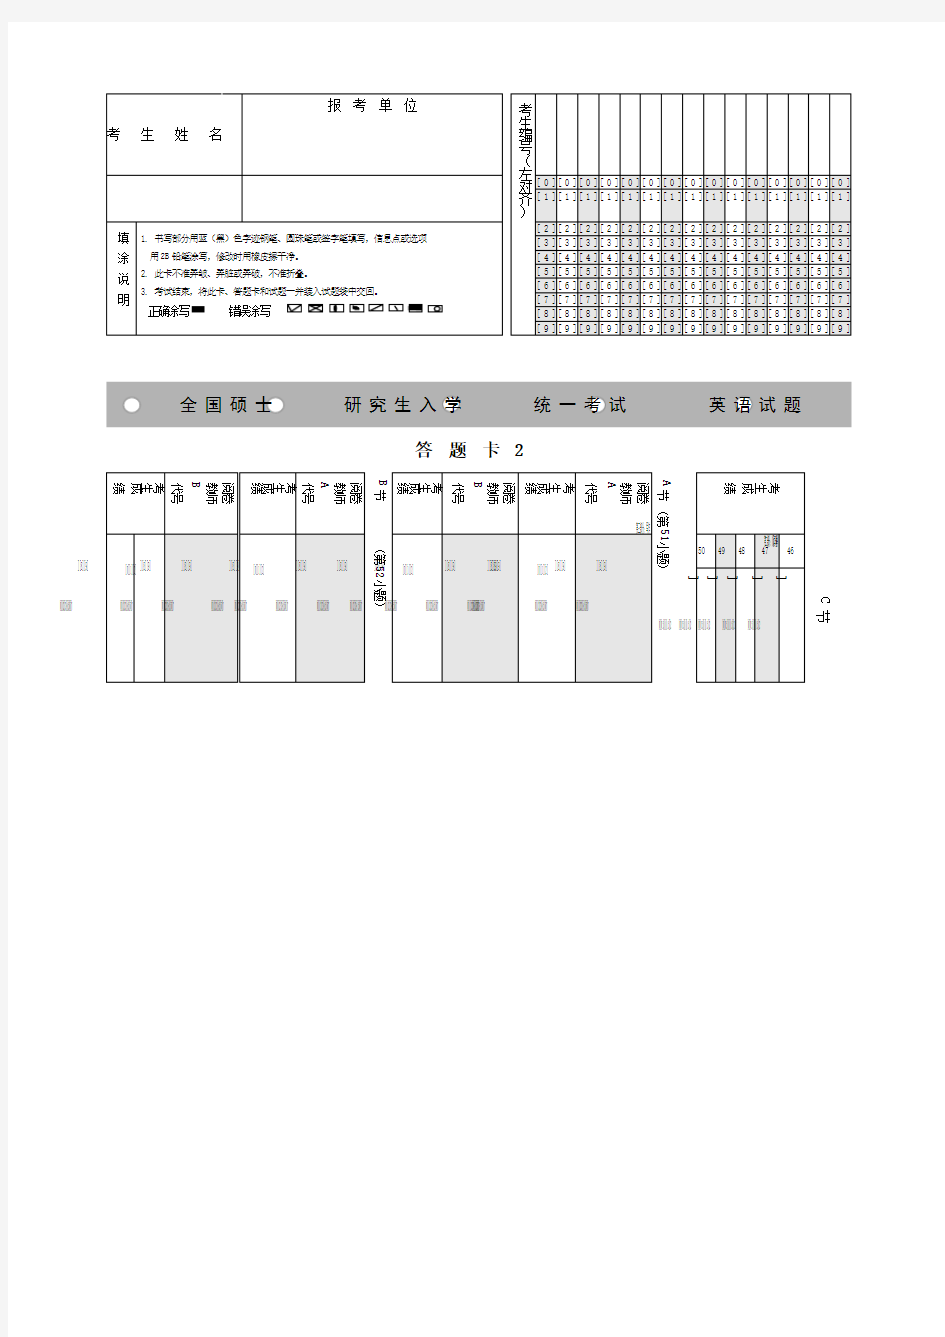 考研英语答题卡模板打印版